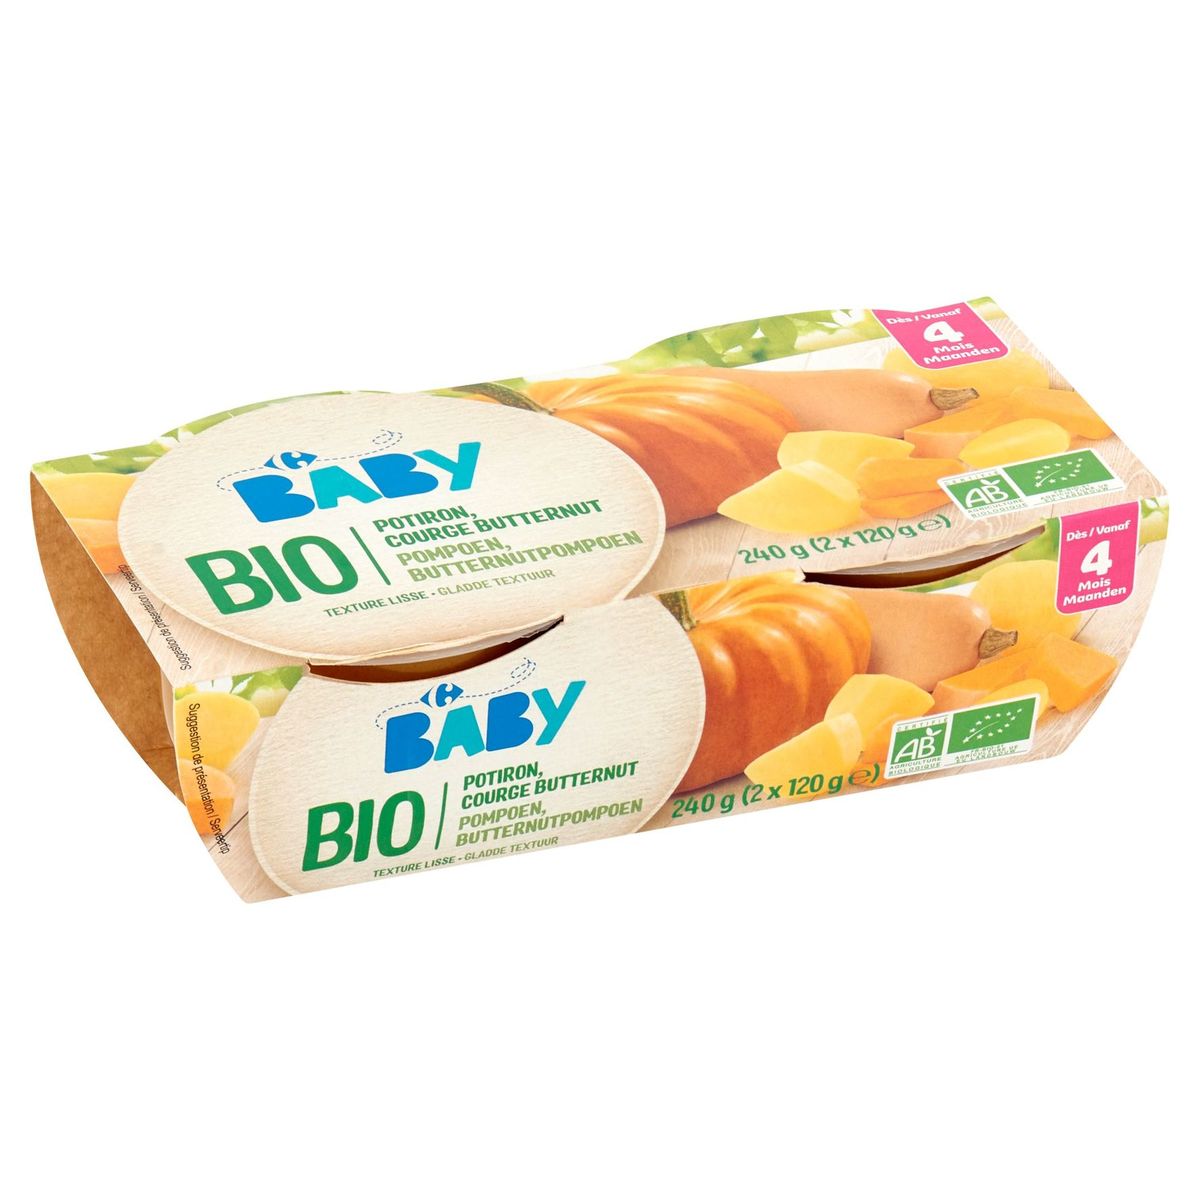 Carrefour Baby Bio Pompoen, Butternutpompoen vanaf 4 Maanden 2 x 120 g